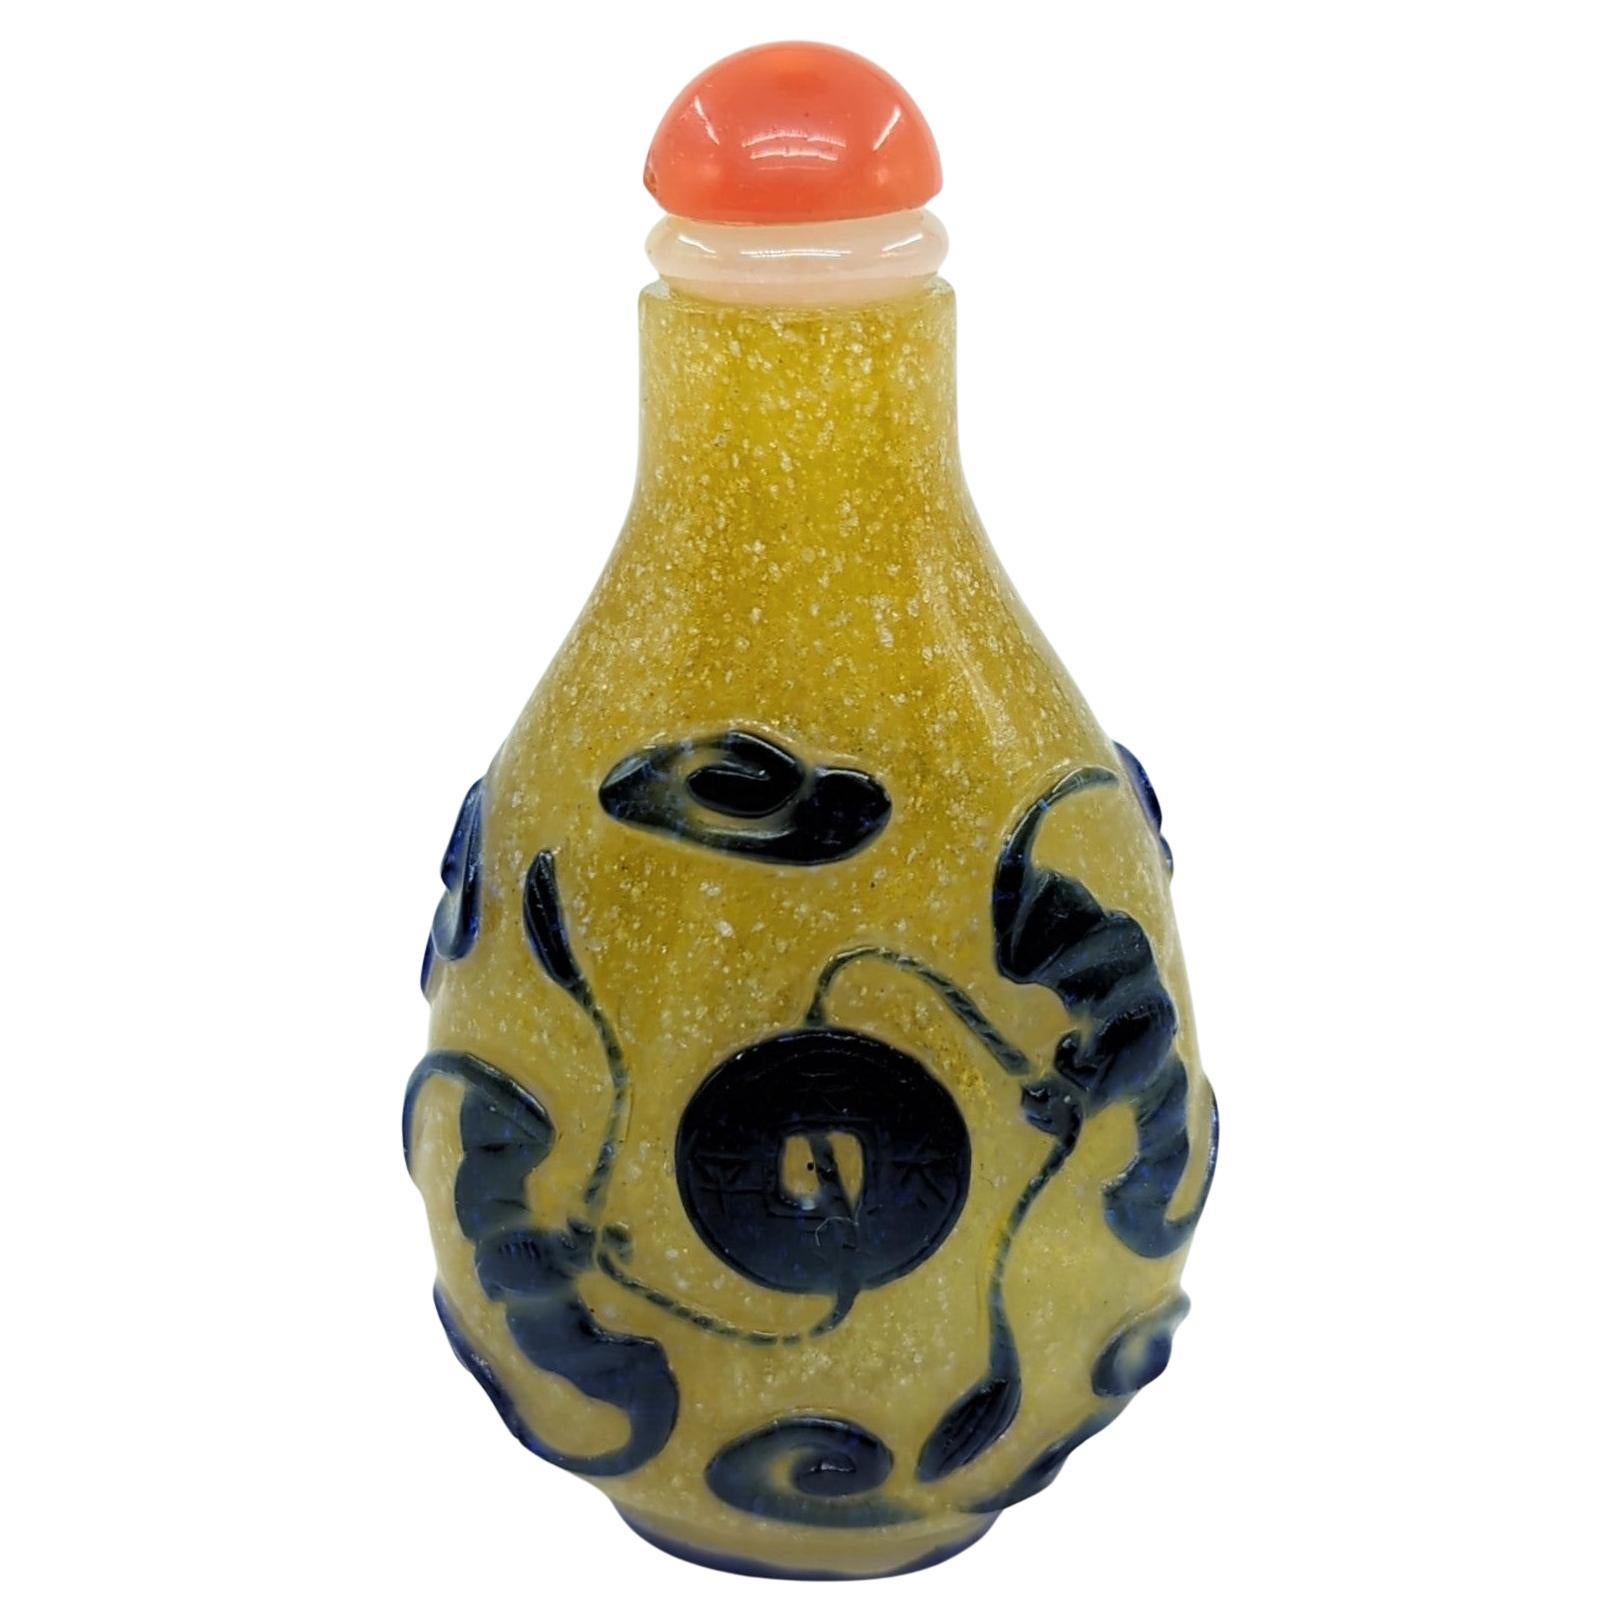 Ce flacon à priser antique de la période Qing est un bel exemple de l'art de la superposition de verre coloré. Elle présente un fond jaune vibrant de tempête de neige, sur lequel du verre bleu foncé a été superposé pour créer un motif saisissant. Le